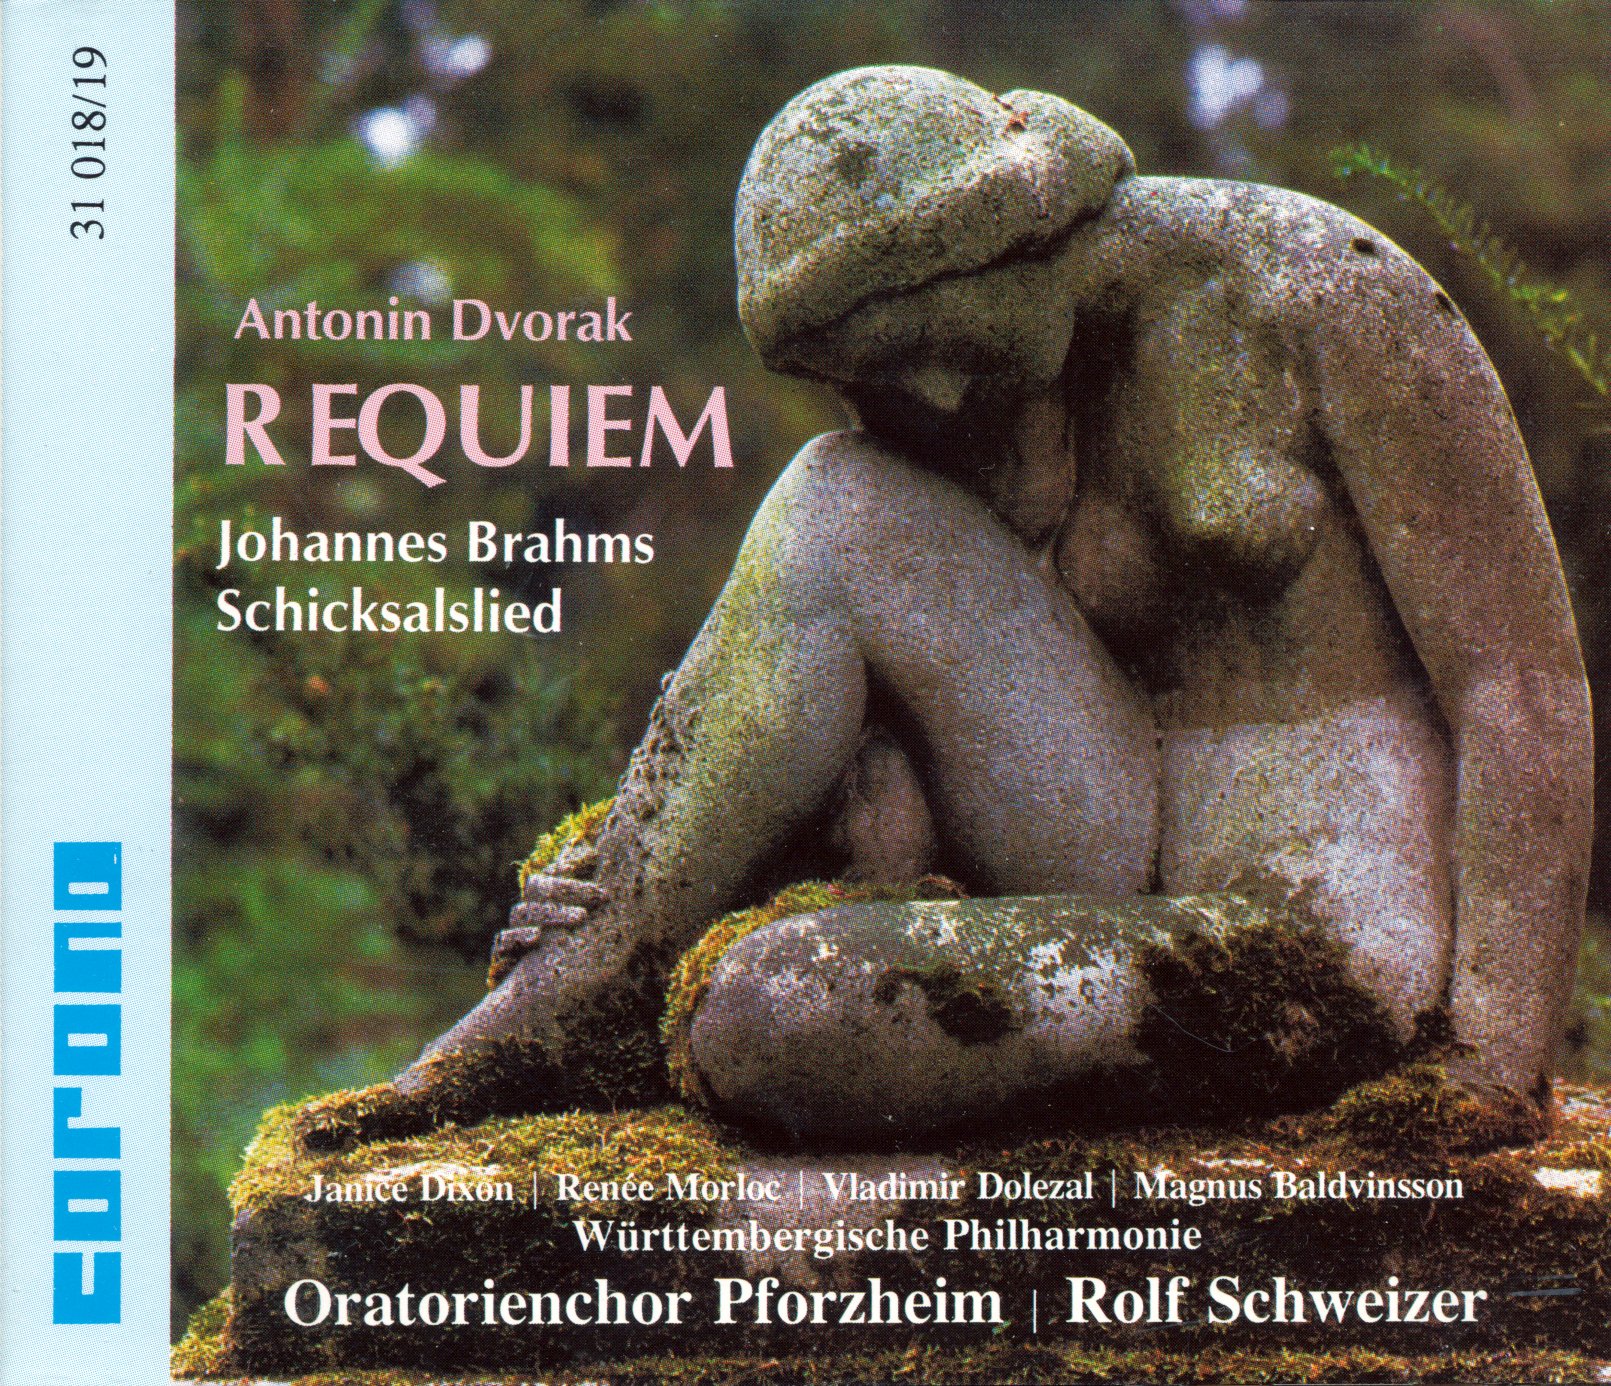 Antonin Dvorak - Requiem